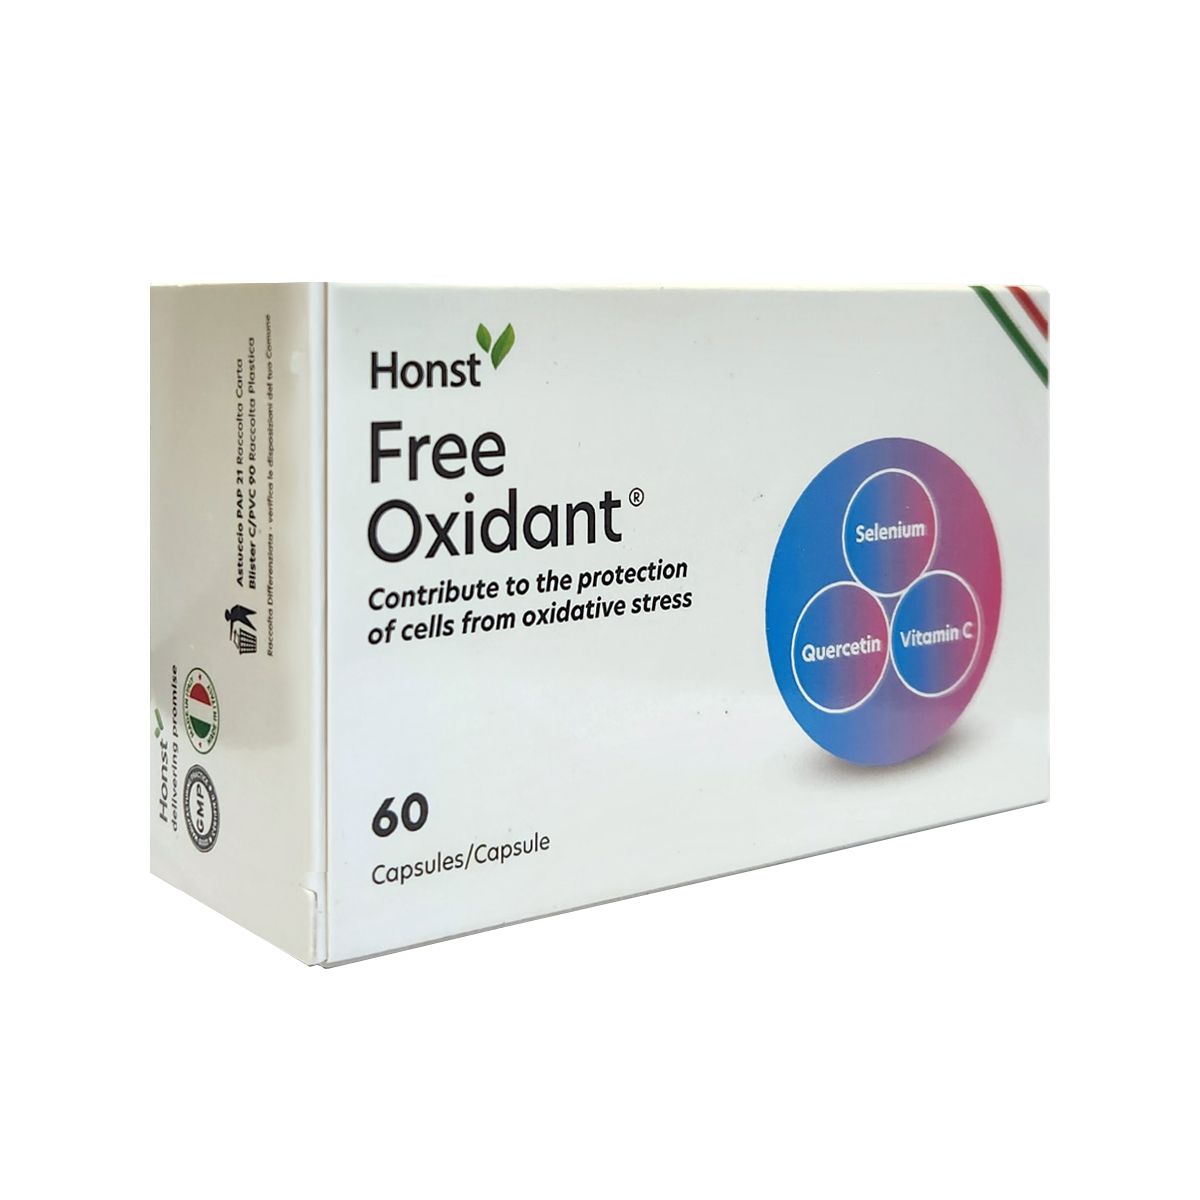 Honst-Free Oxidant 60 Capsules/Capsule